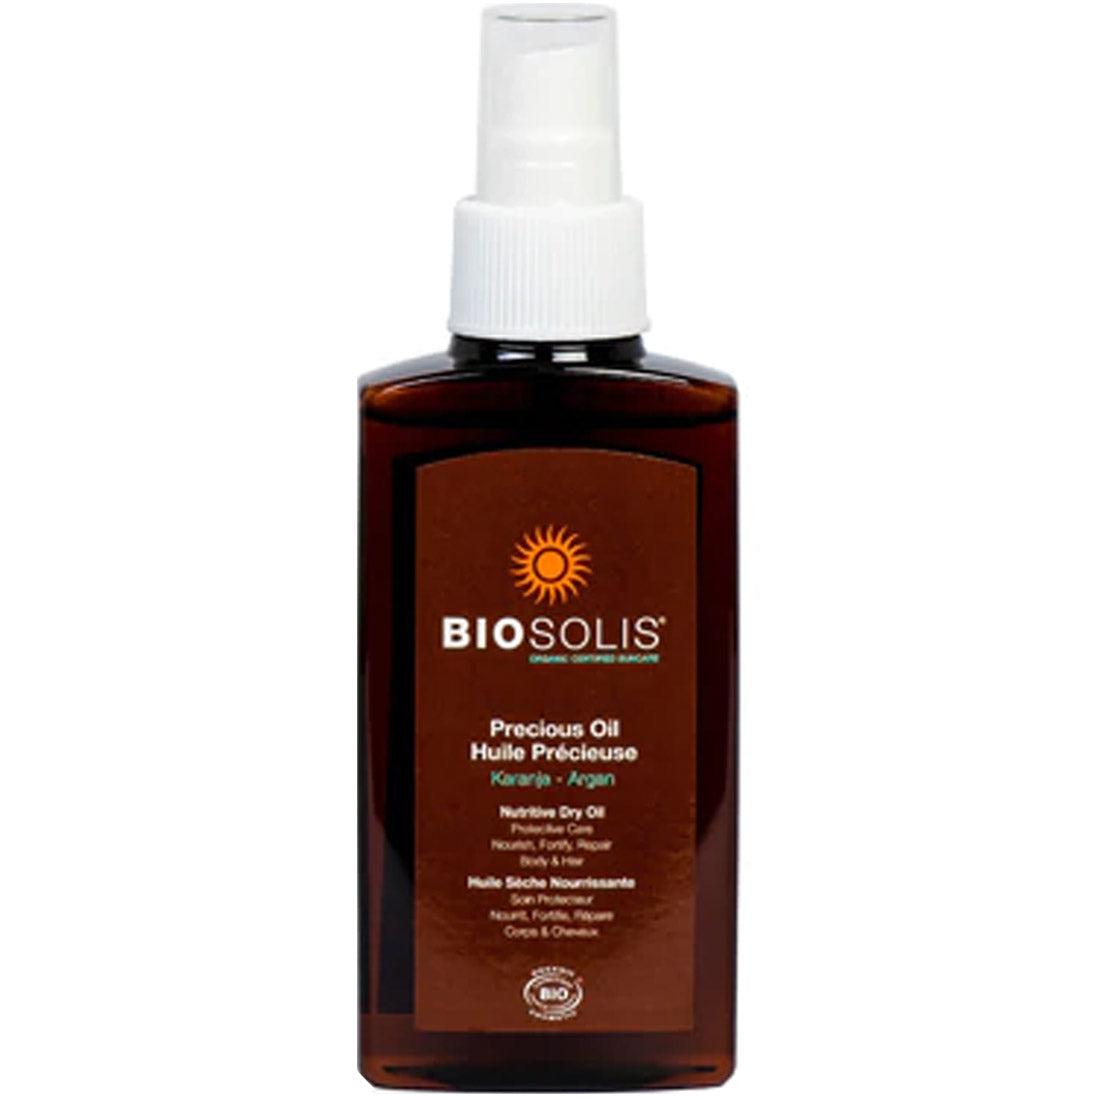 Biosolis Precious Oil Spray (For A Darker Natural Tan), 125ml